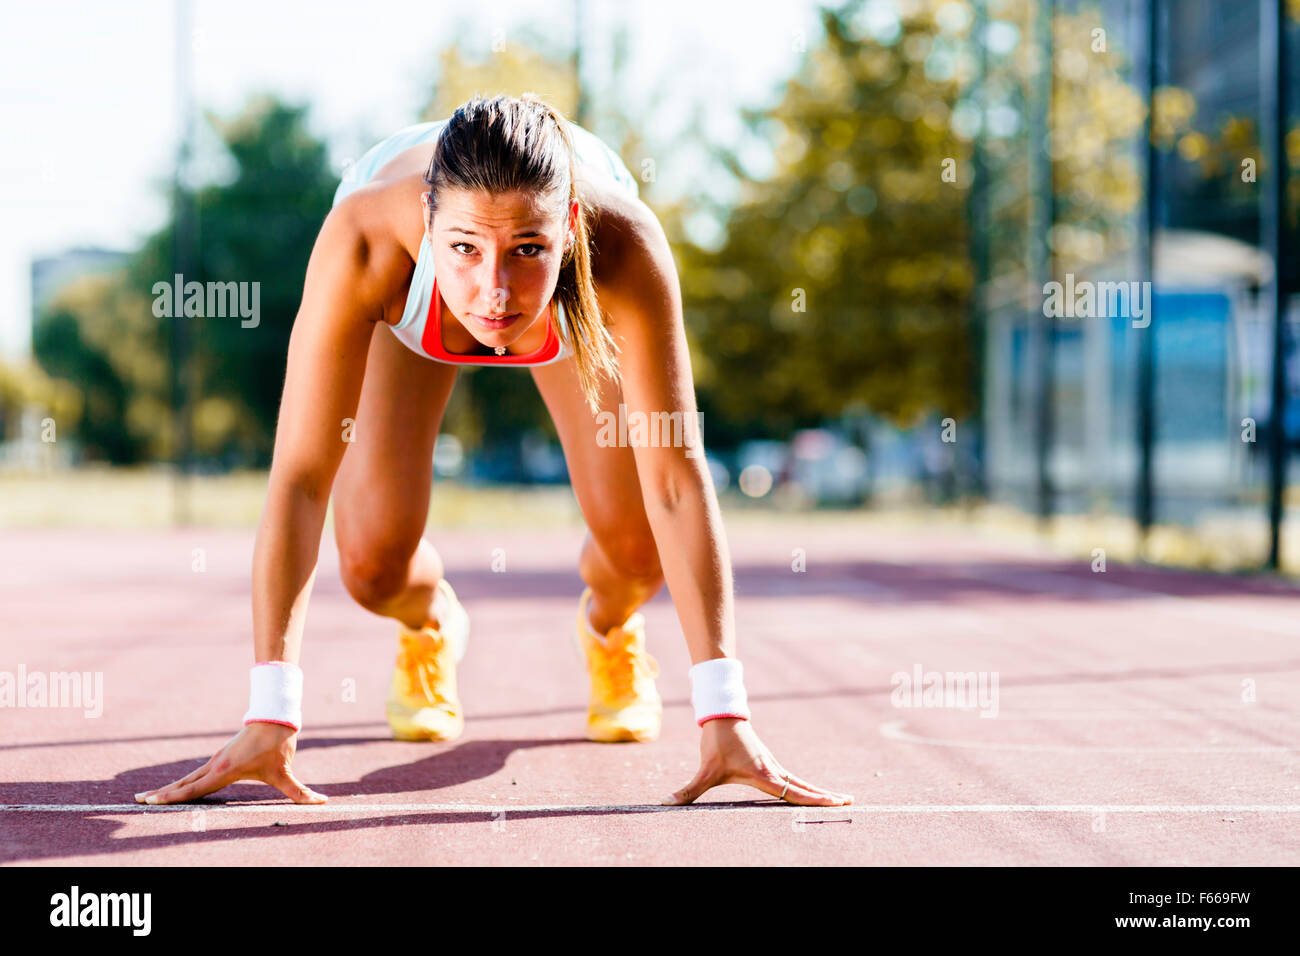 Belle femme sprinter se préparer pour l'exécuter au cours de l'été Banque D'Images